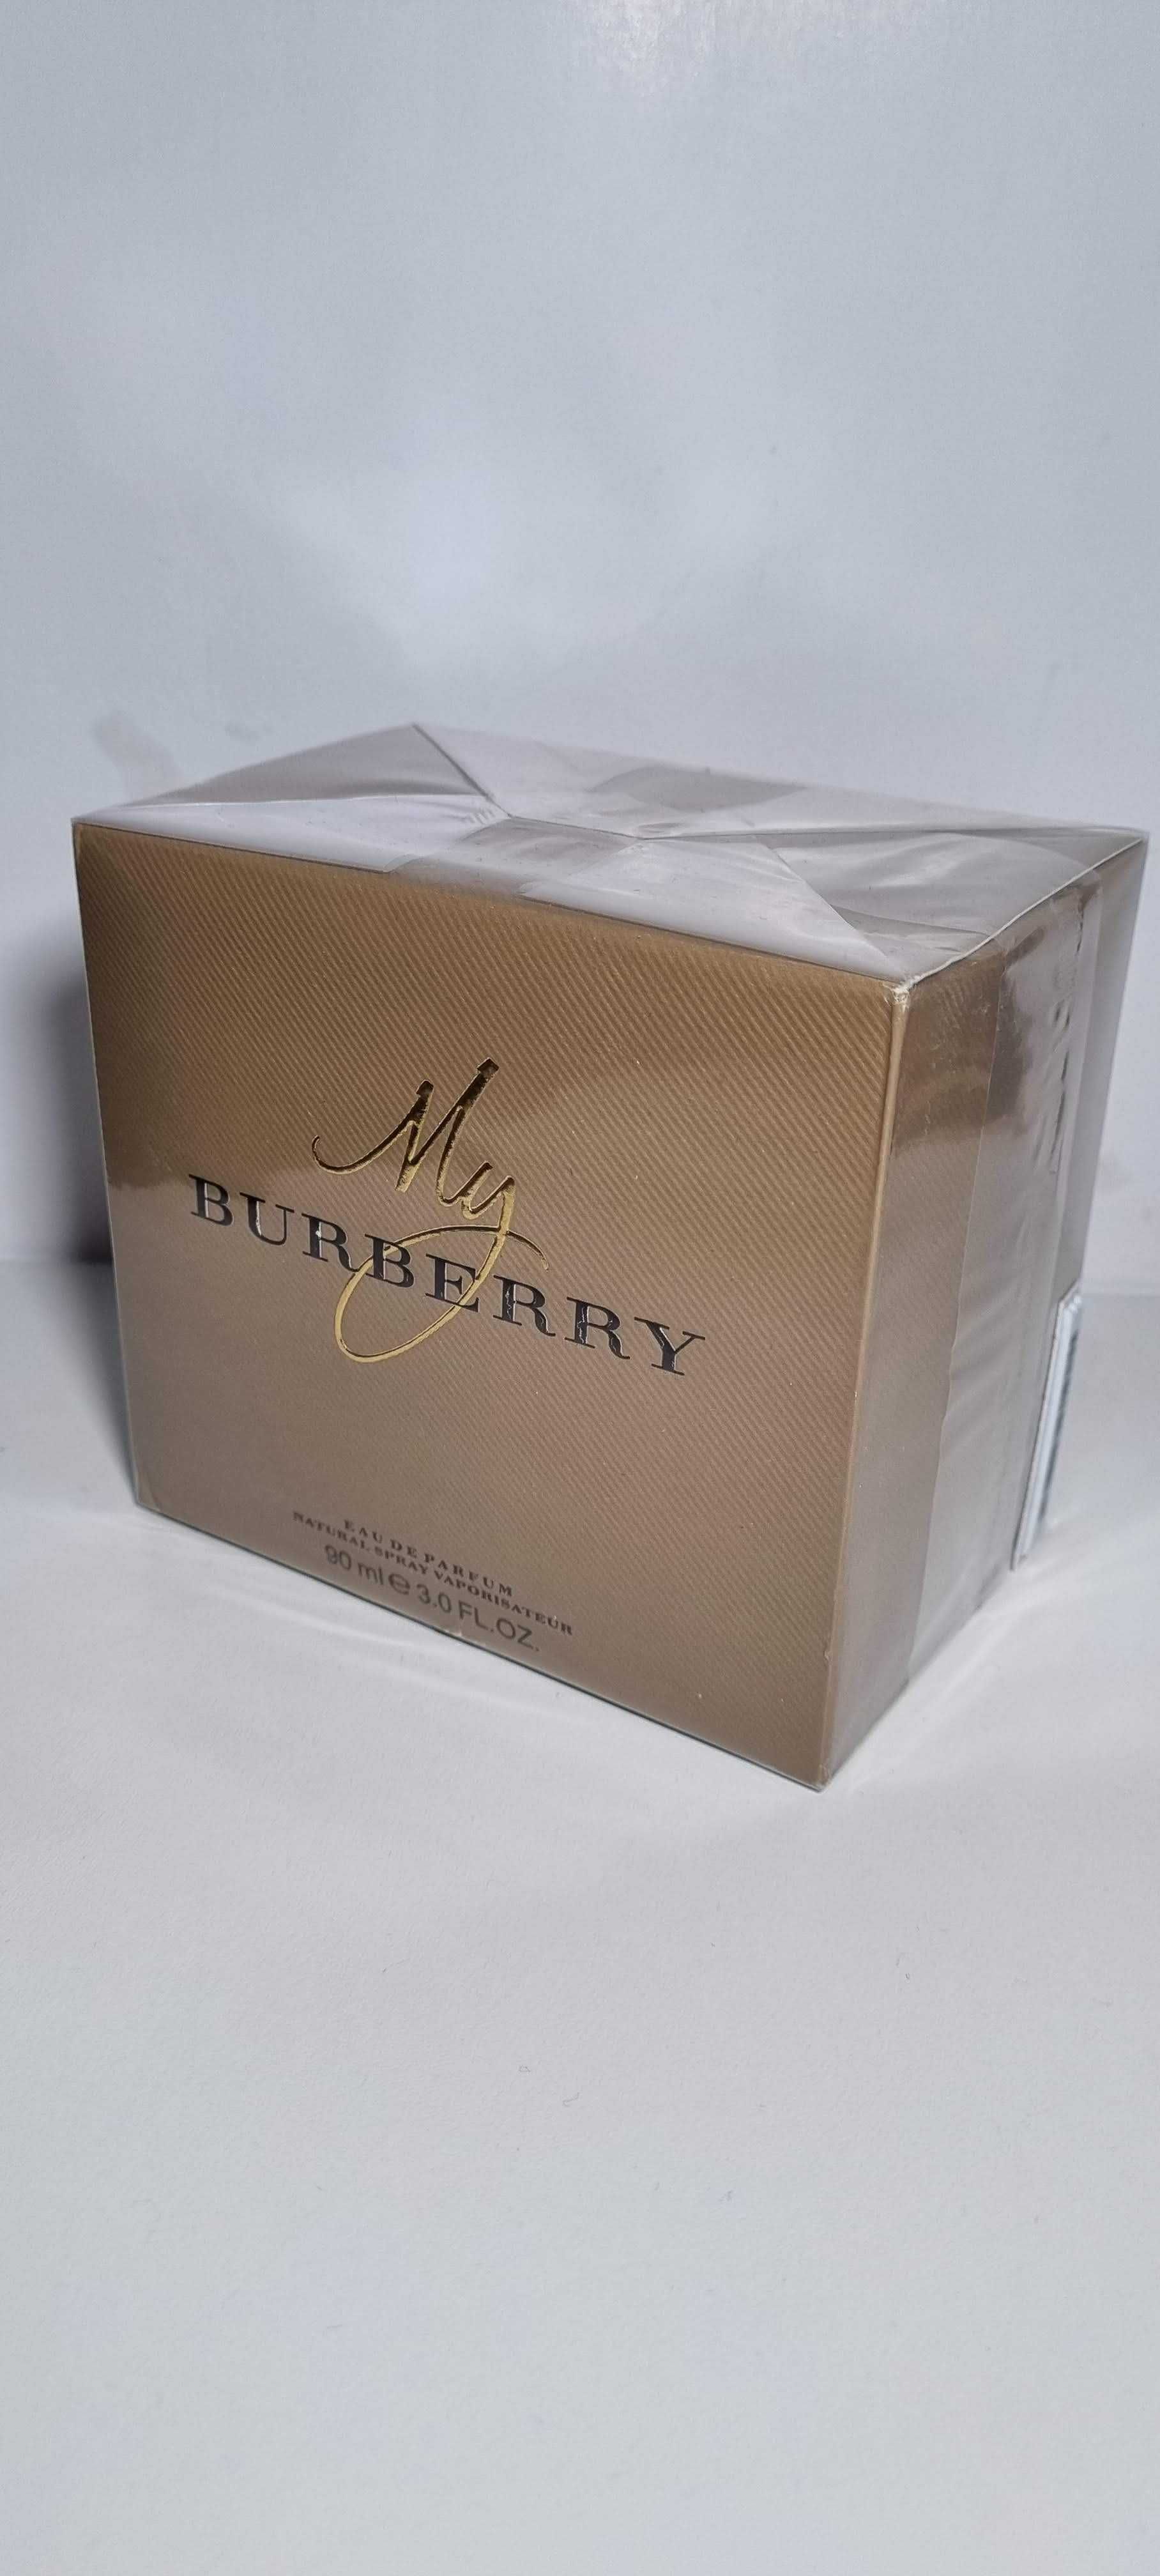 Parfum Burberry - My Burberry / My Burberry Black, EDP, 90ml, sigilat